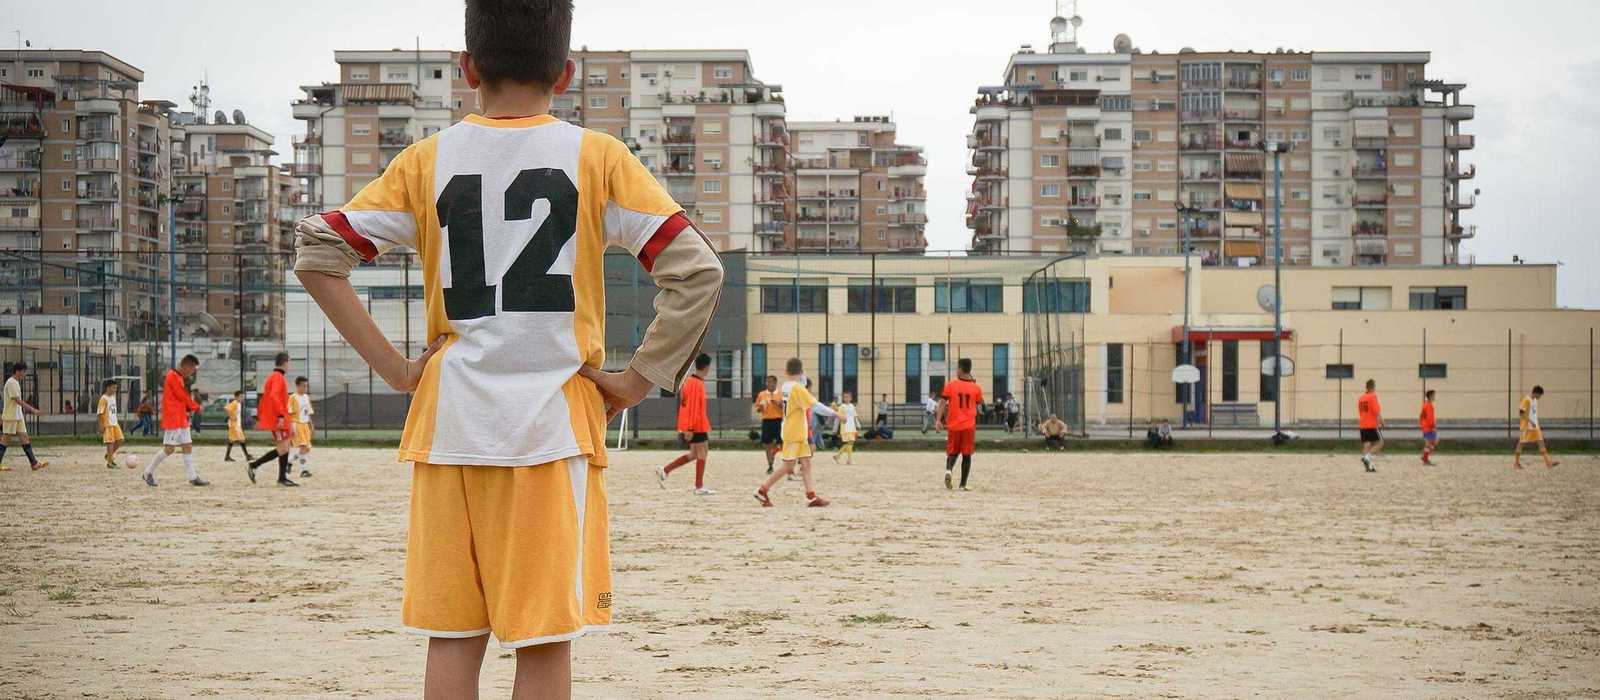 Junge beim Fusßballspielen in Albanien